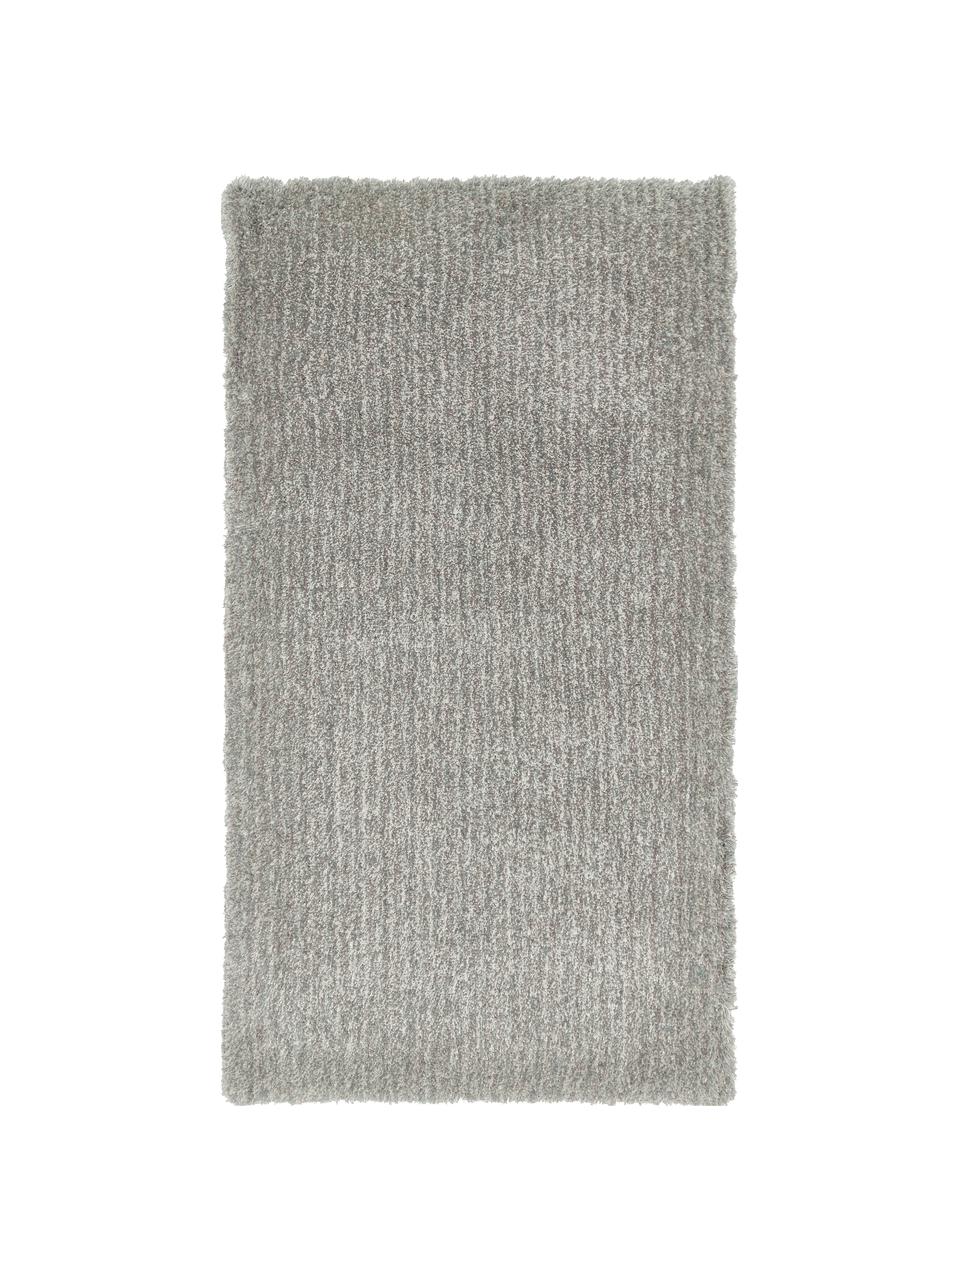 Fluffy Melange vloerkleed in grijs/mintgroen | Westwing